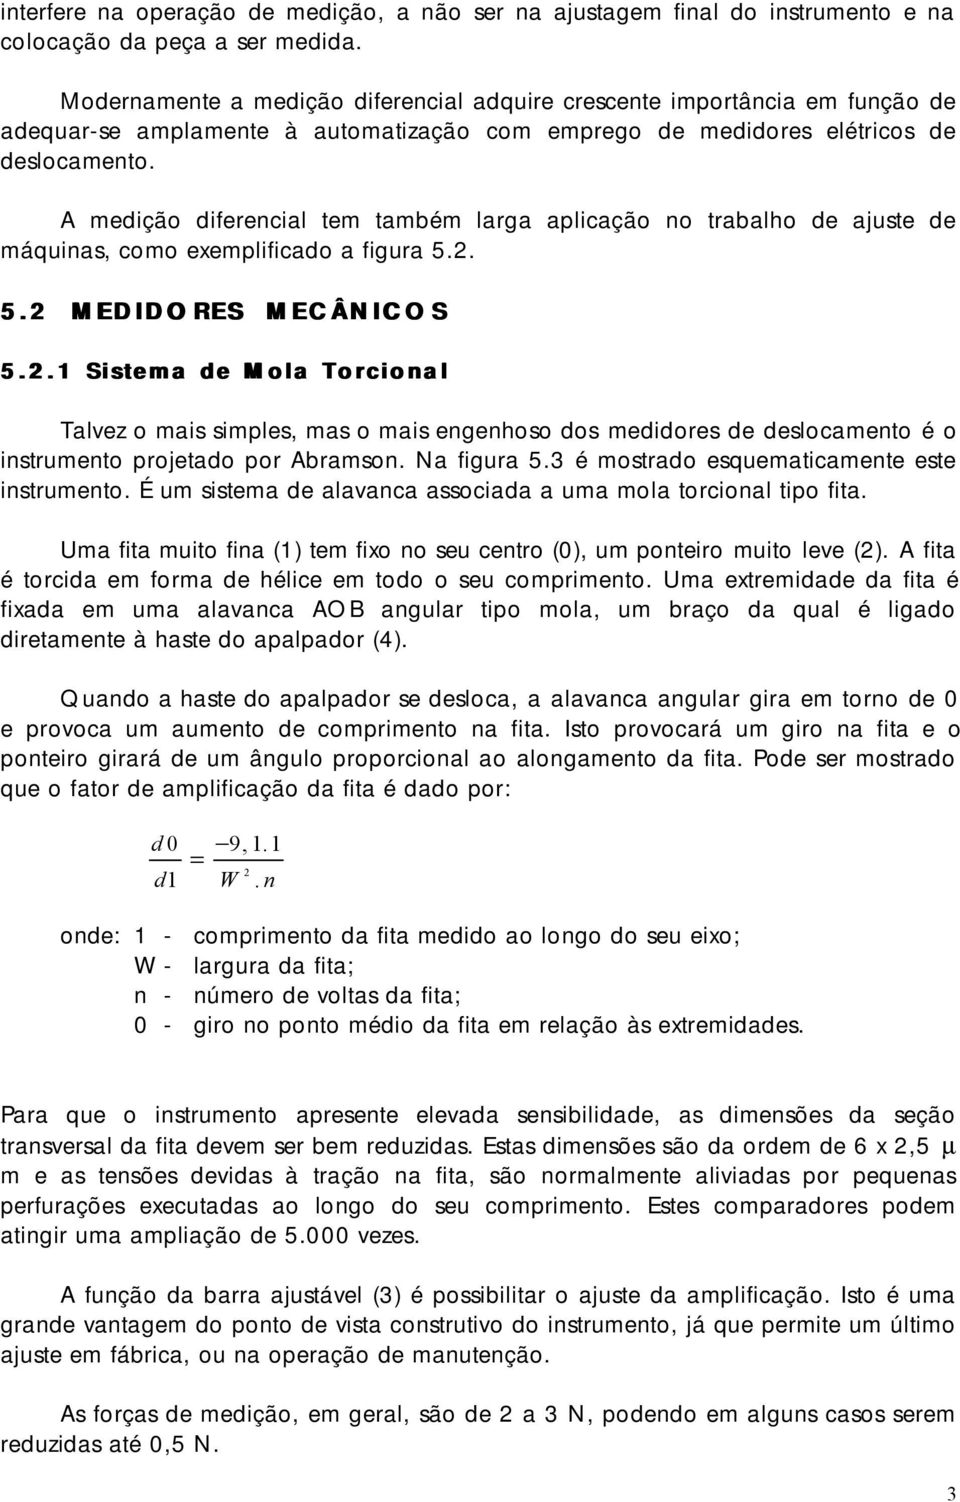 A medição diferencial tem também larga aplicação no trabalho de ajuste de máquinas, como exemplificado a figura 5.2.